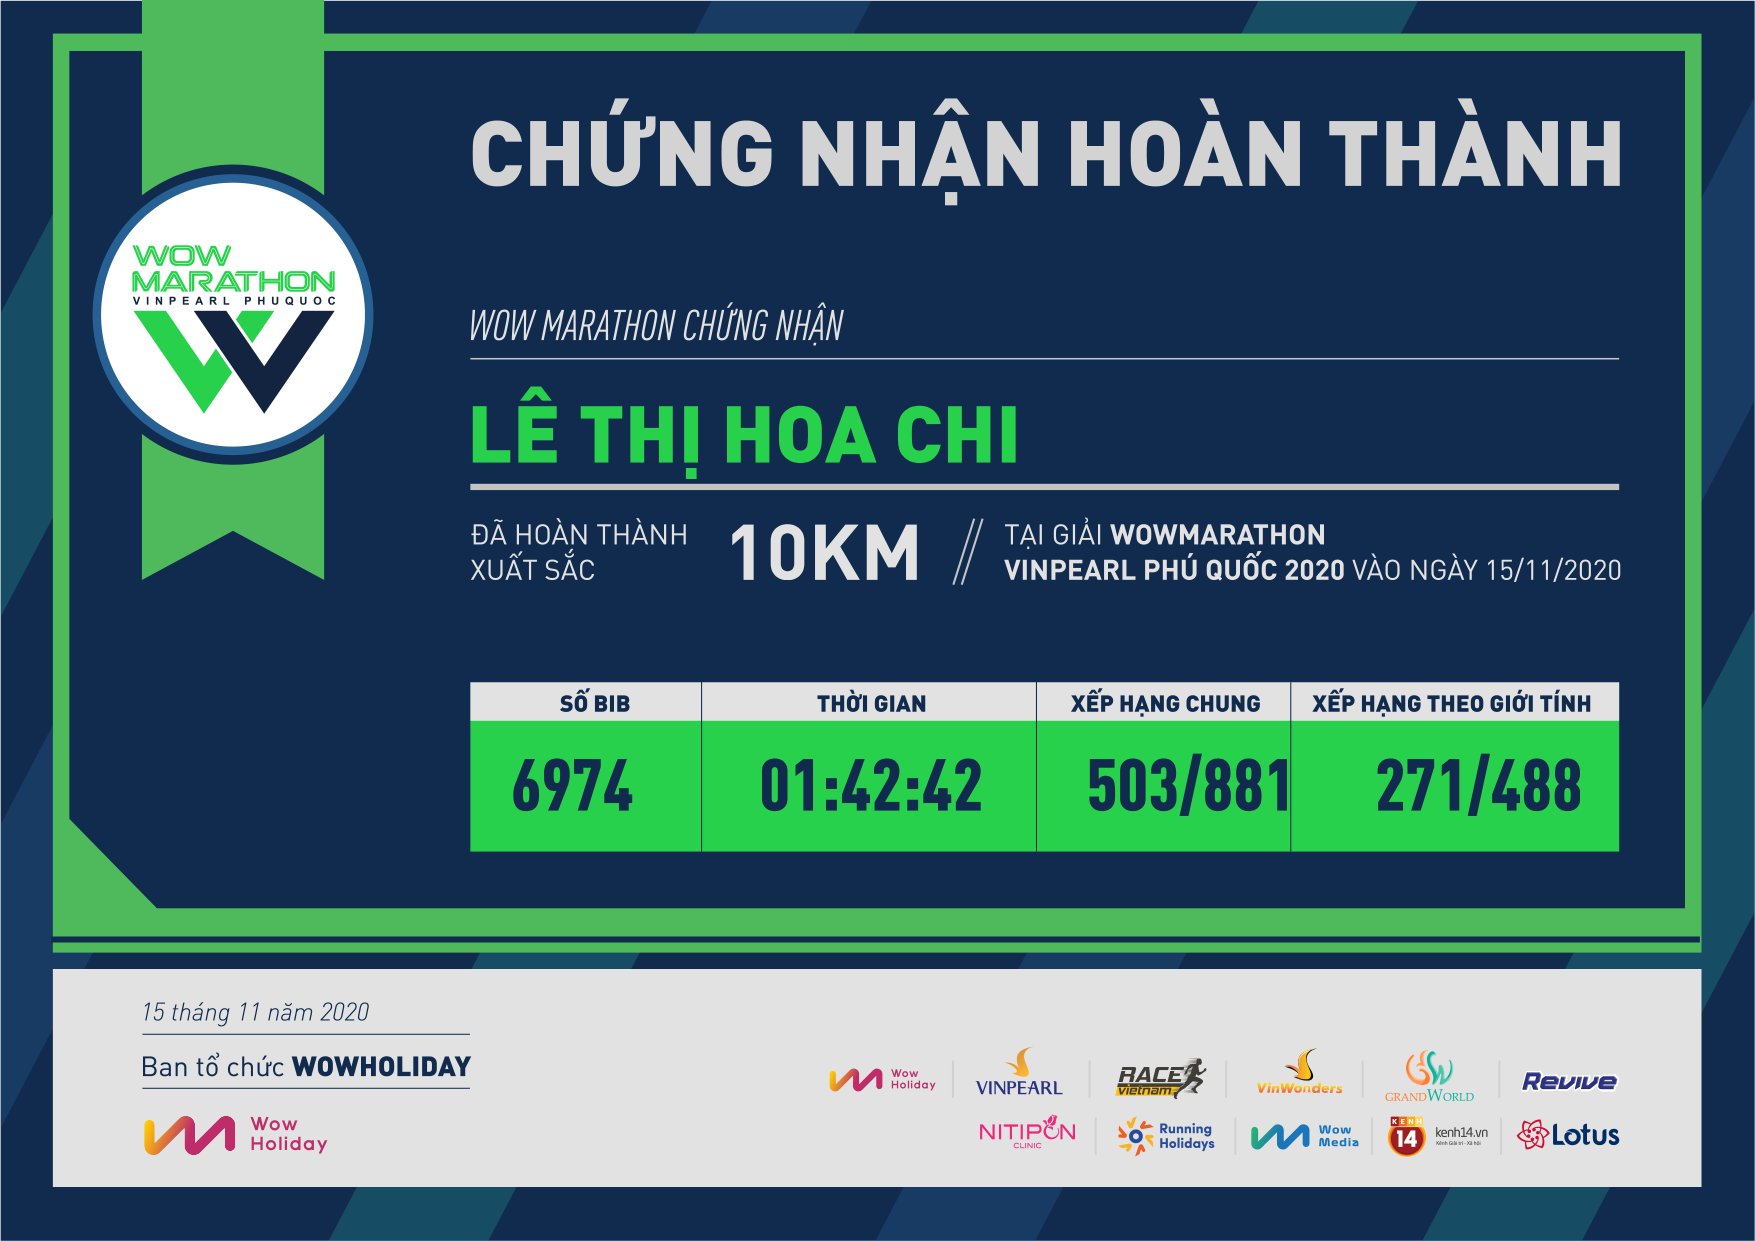 6974 - Lê Thị Hoa Chi